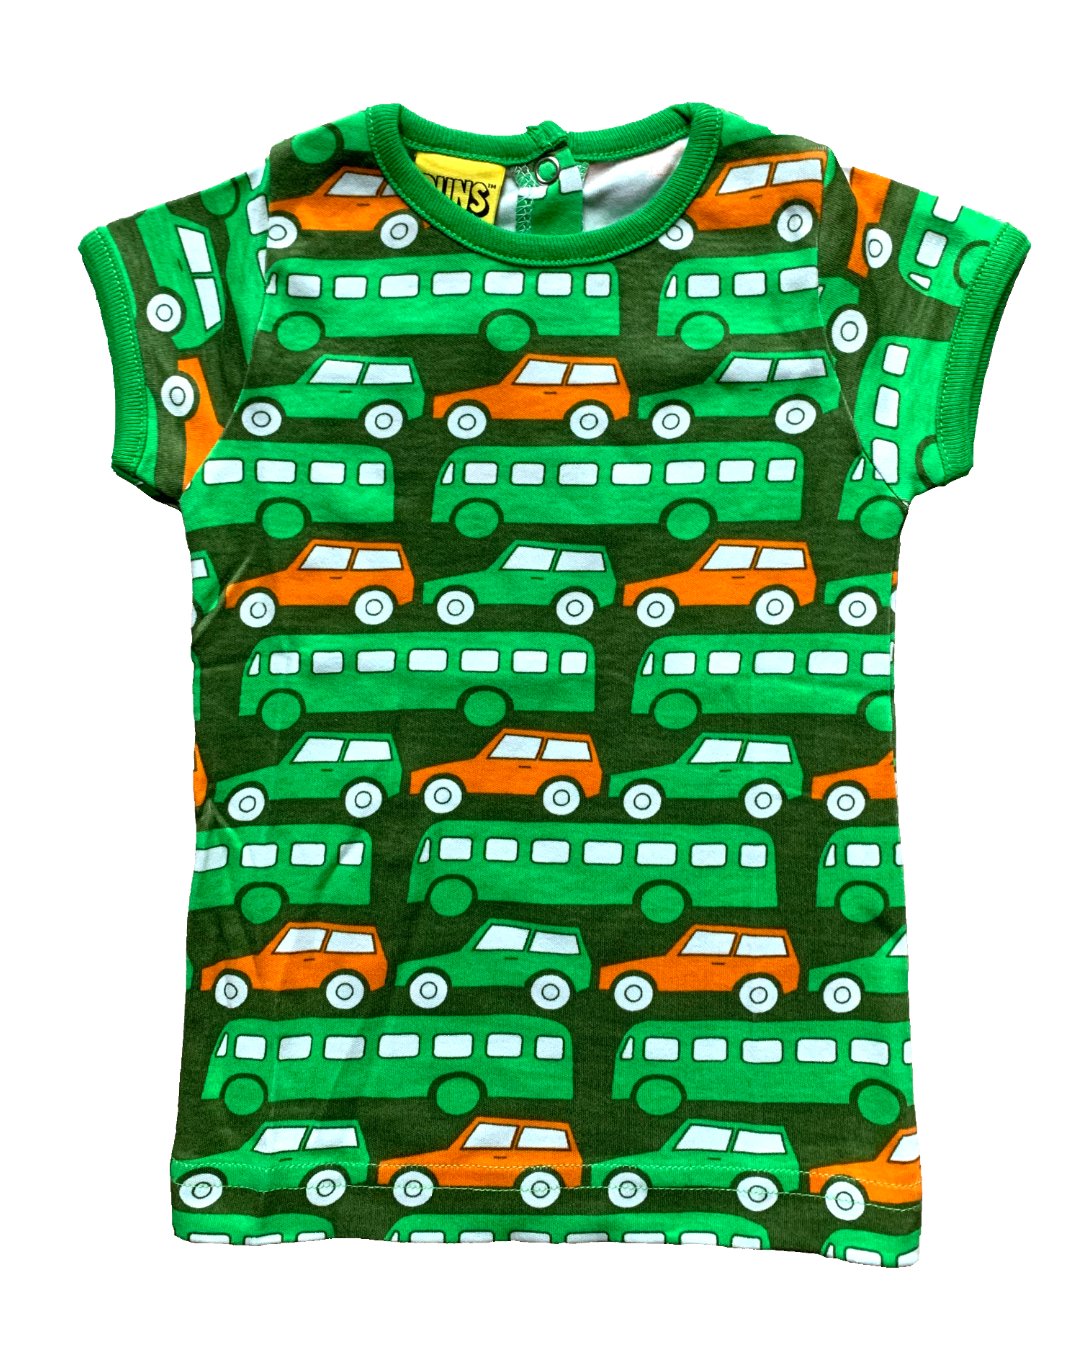 Grünes Kinder T-Shirt mit Autos und Bussen in grün und orange aus Biobaumwolle von DUNS Sweden